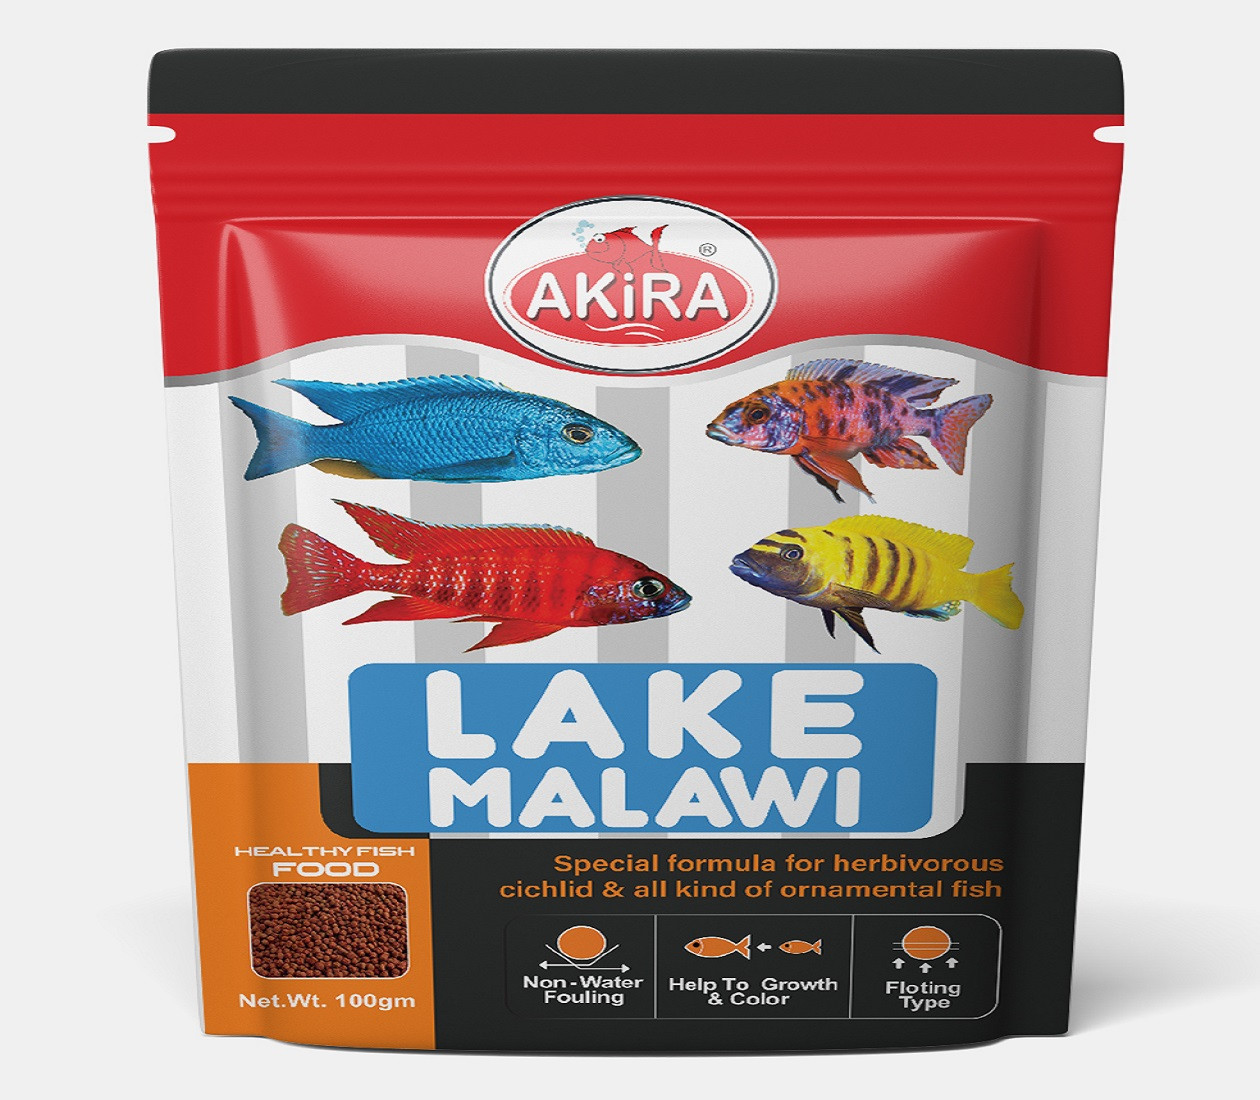 AKIRA LAKE MALAWAI